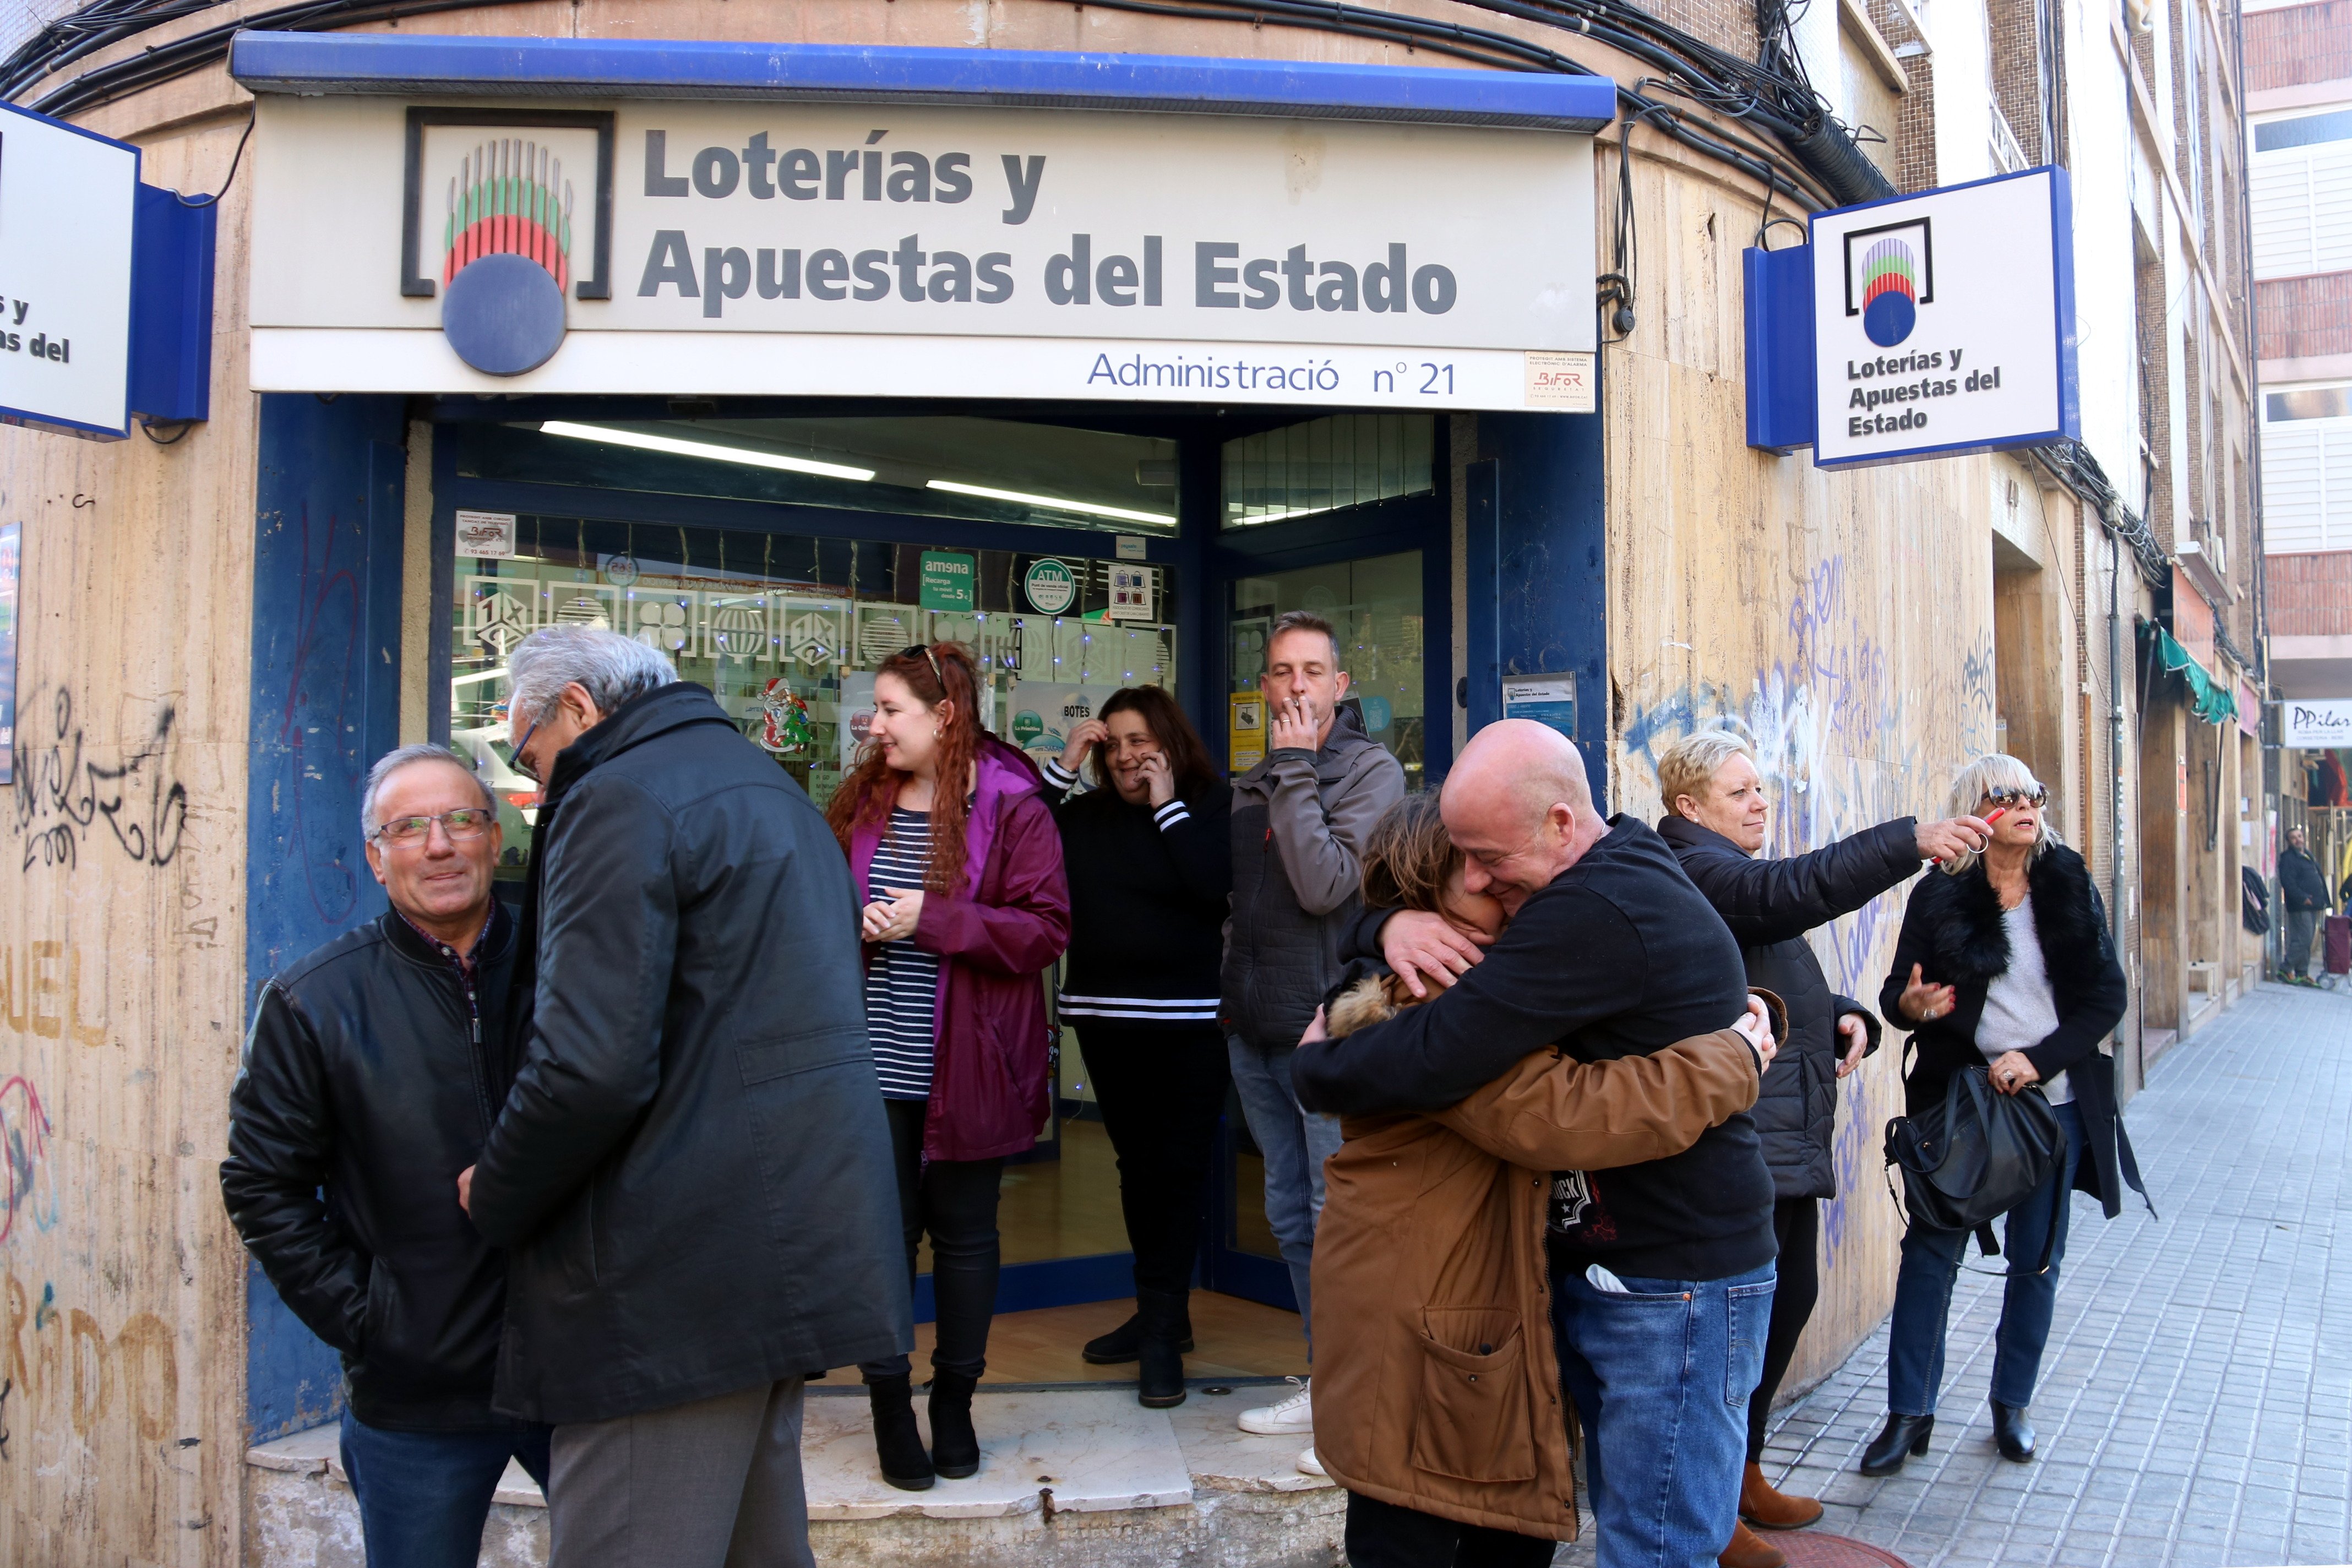 Suspenen la loteria a Espanya pel coronavirus, la catalana pendent de decisió